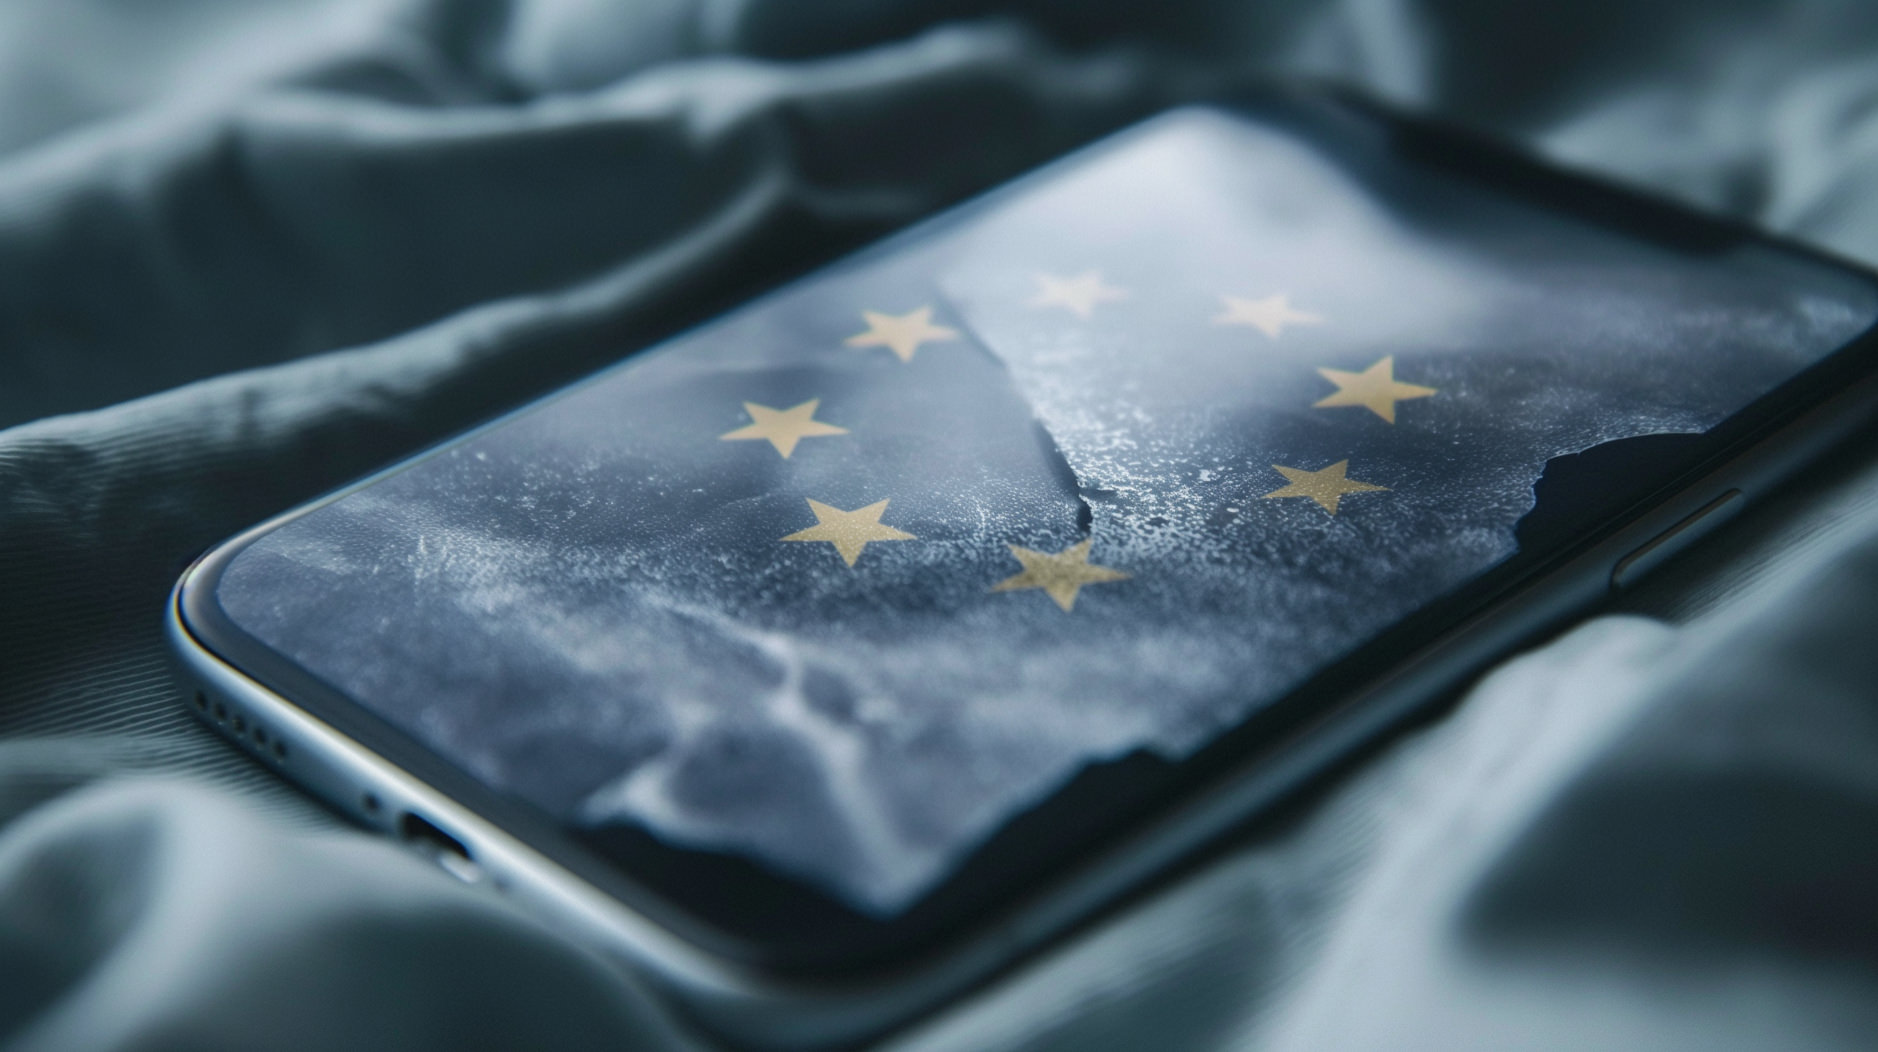 Das Bild zeigt ein iPhone, das auf einer welligen, texturierten Oberfläche liegt. Auf dem Bildschirm des Telefons ist eine grafische Darstellung der Flagge der Europäischen Union zu sehen, die aus einem Kreis von zwölf goldenen Sternen auf dunklem Hintergrund besteht.